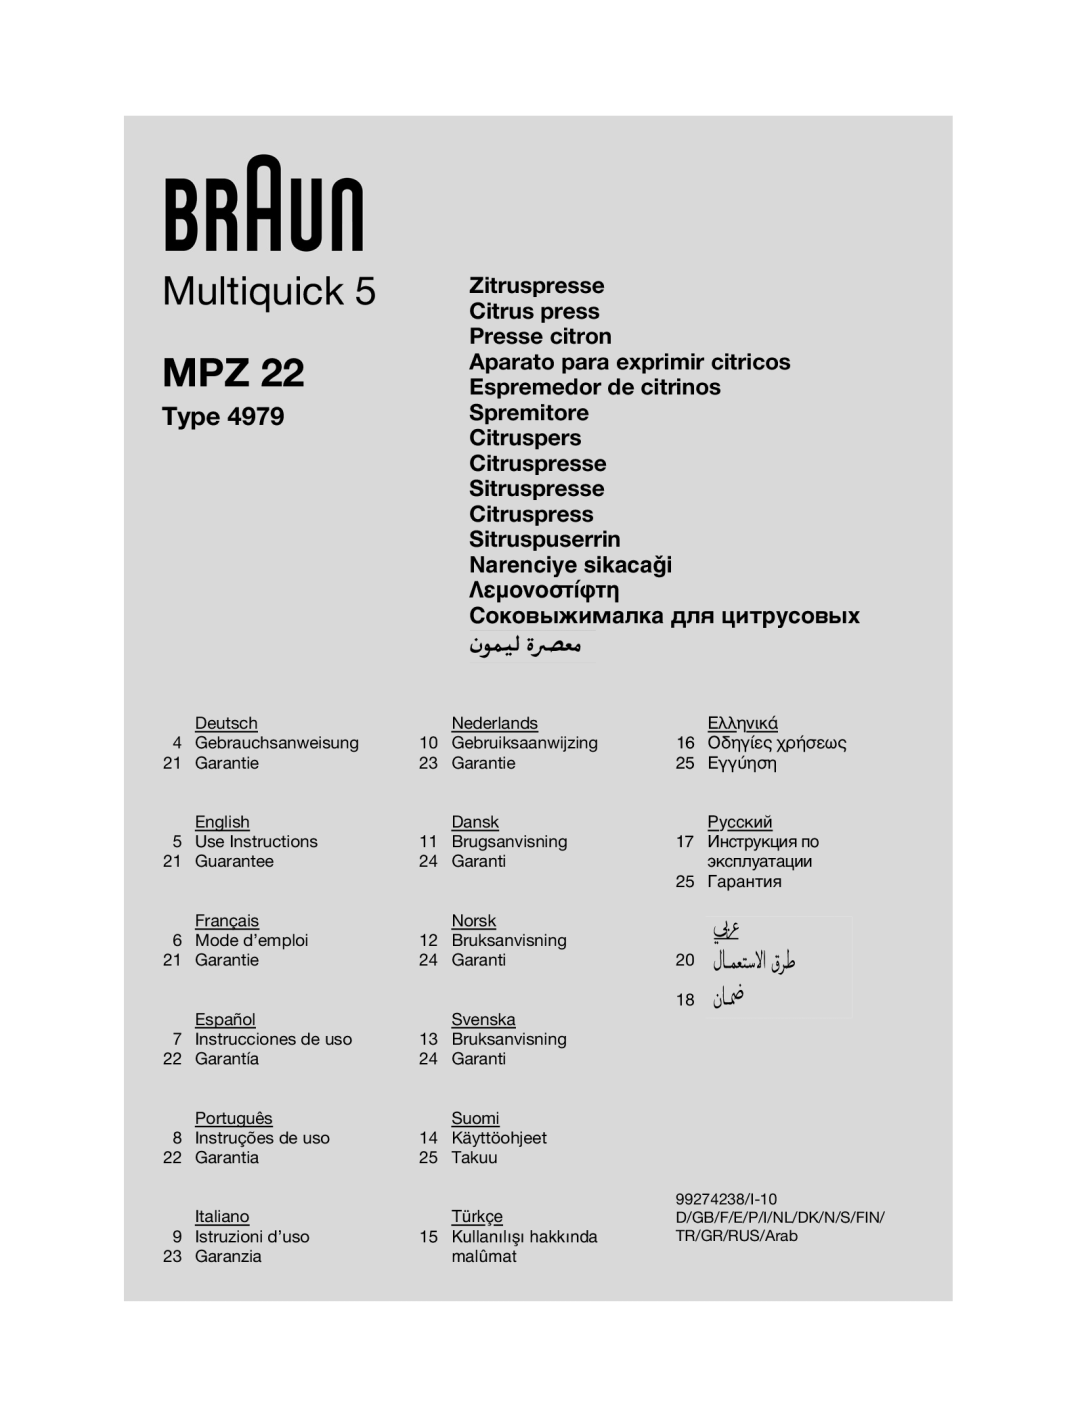 Braun MPZ 22 manual Type, §Âìôóôûù›Êùë, ëÓÍÓ‚˚ÊËÏ‡ÎÍ‡ ‰Îﬂ ˆËÚÛÒÓ‚˚ı, Multiquick 